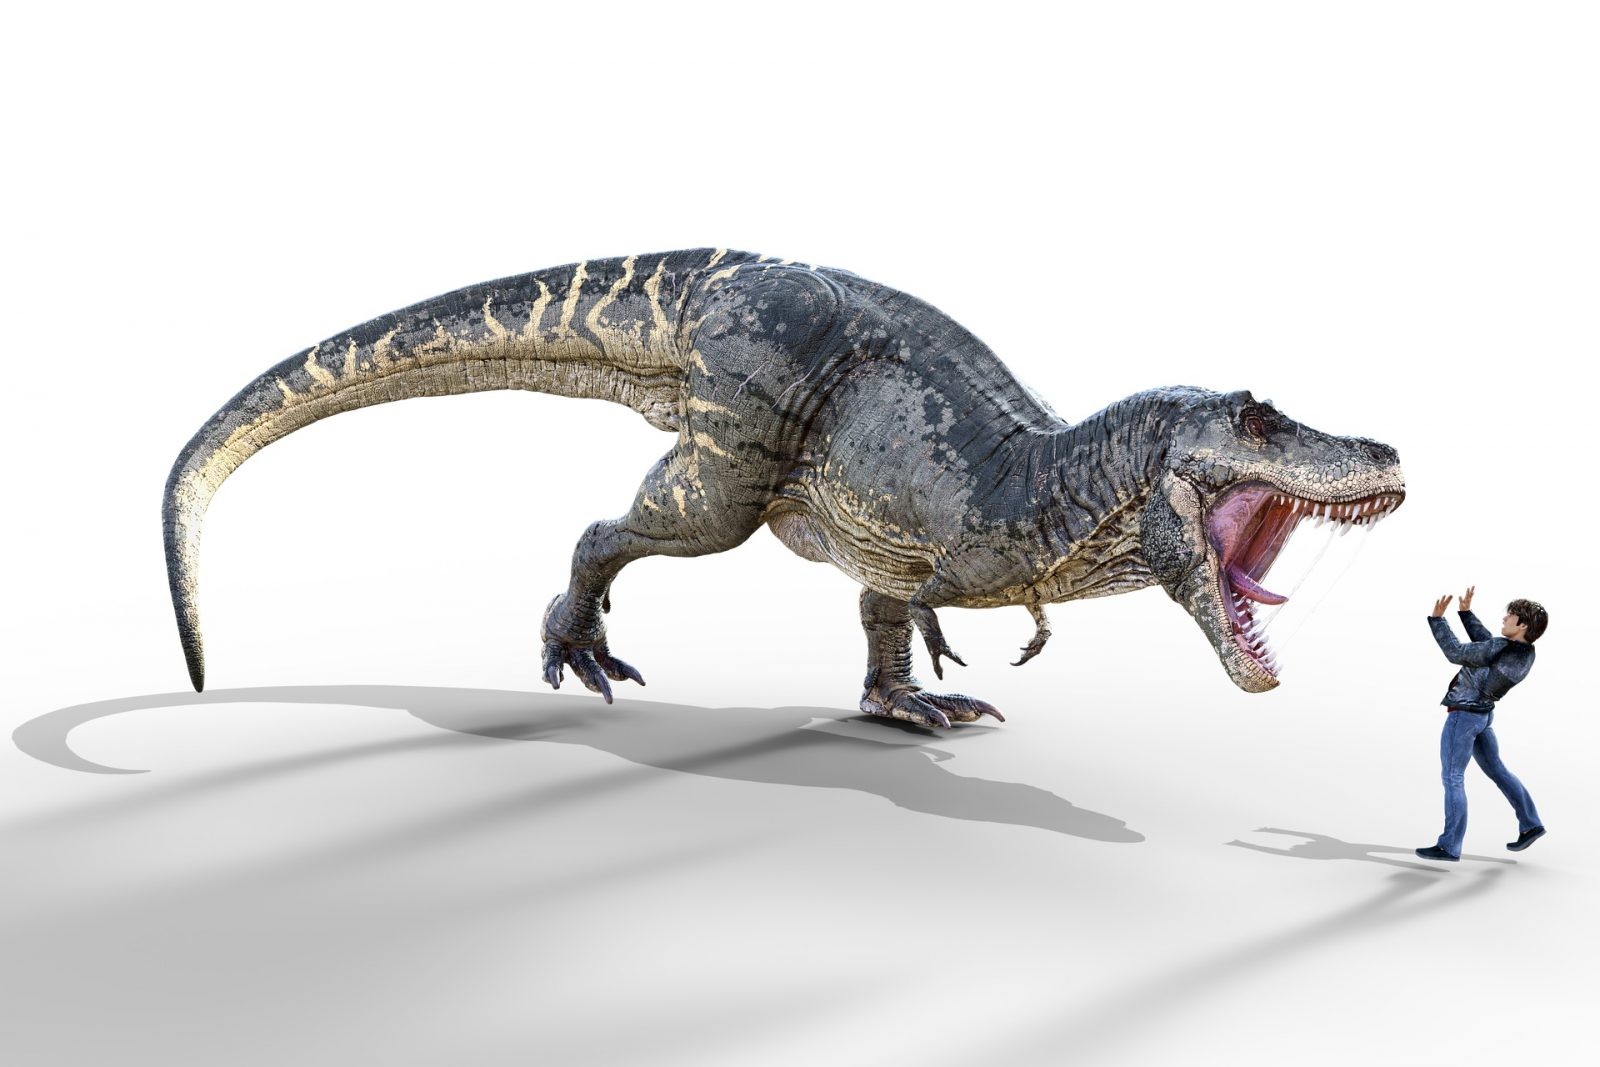 Nie zgadniesz ile tyranozaurów przewinęło się przez powierzchnię Ziemi. Więcej niż ci się wydaje